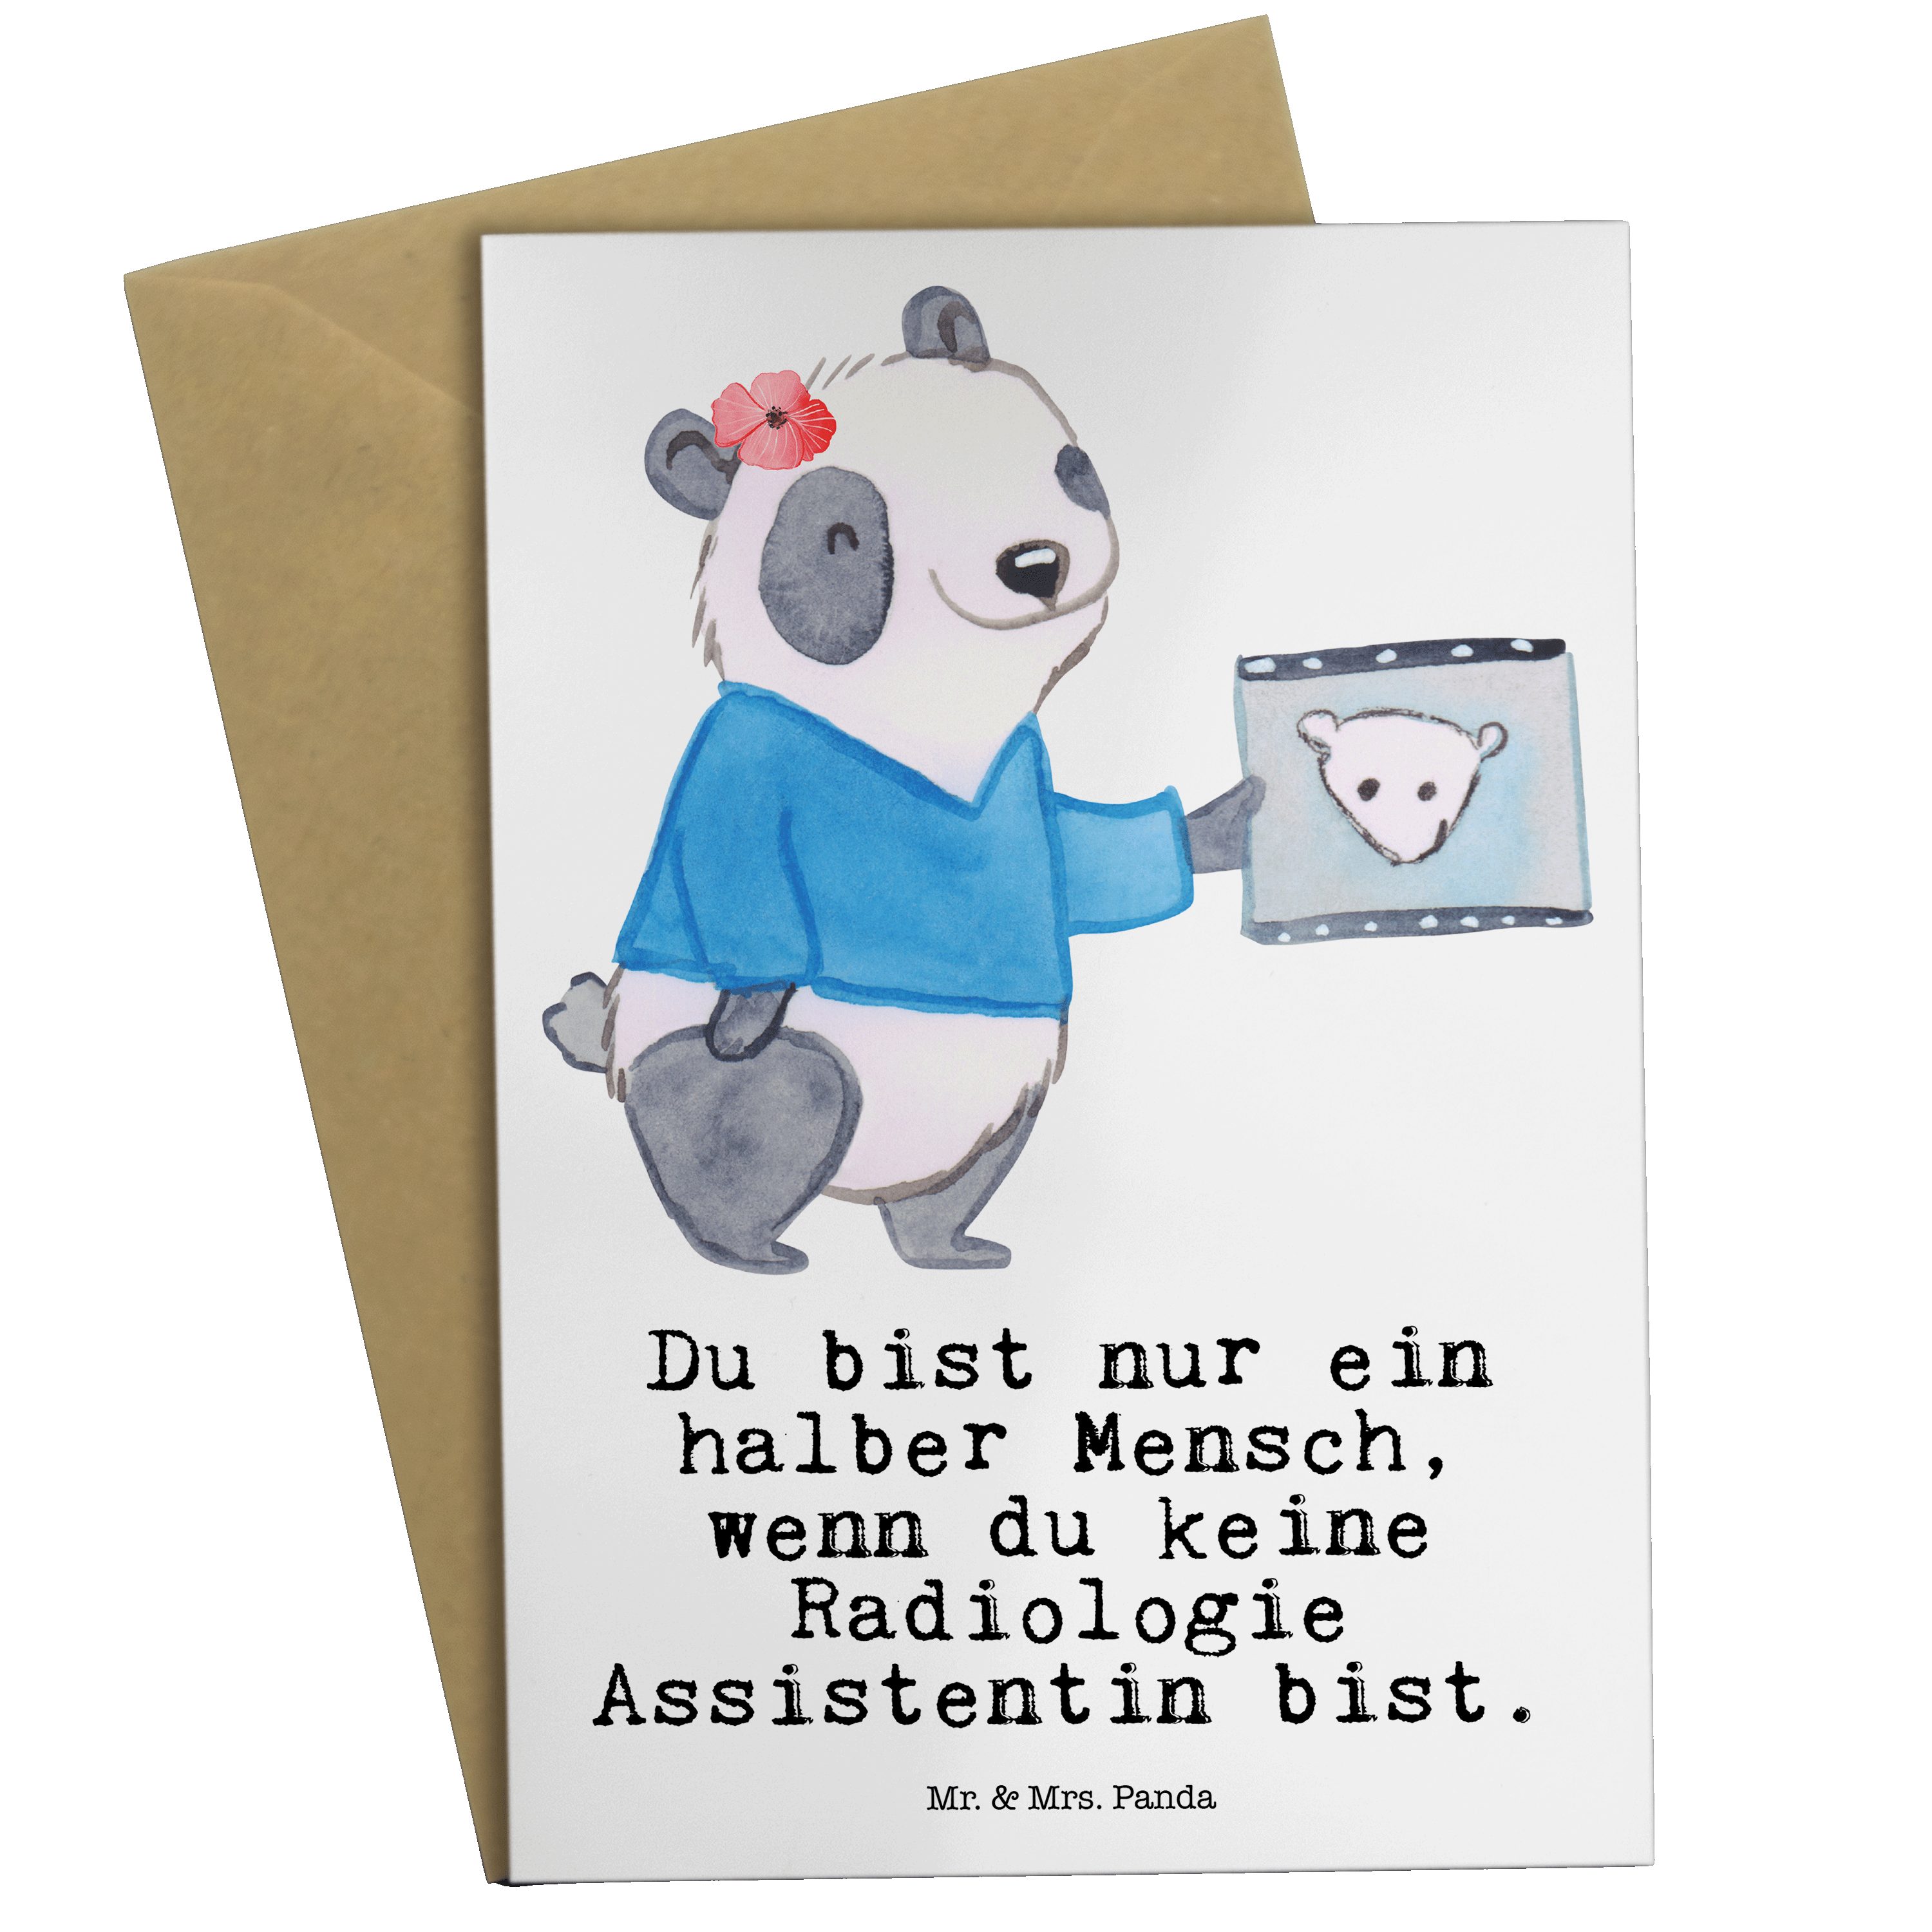 Mr. & Mrs. Panda Grußkarte Radiologie Assistentin mit Herz - Weiß - Geschenk, Glückwunschkarte